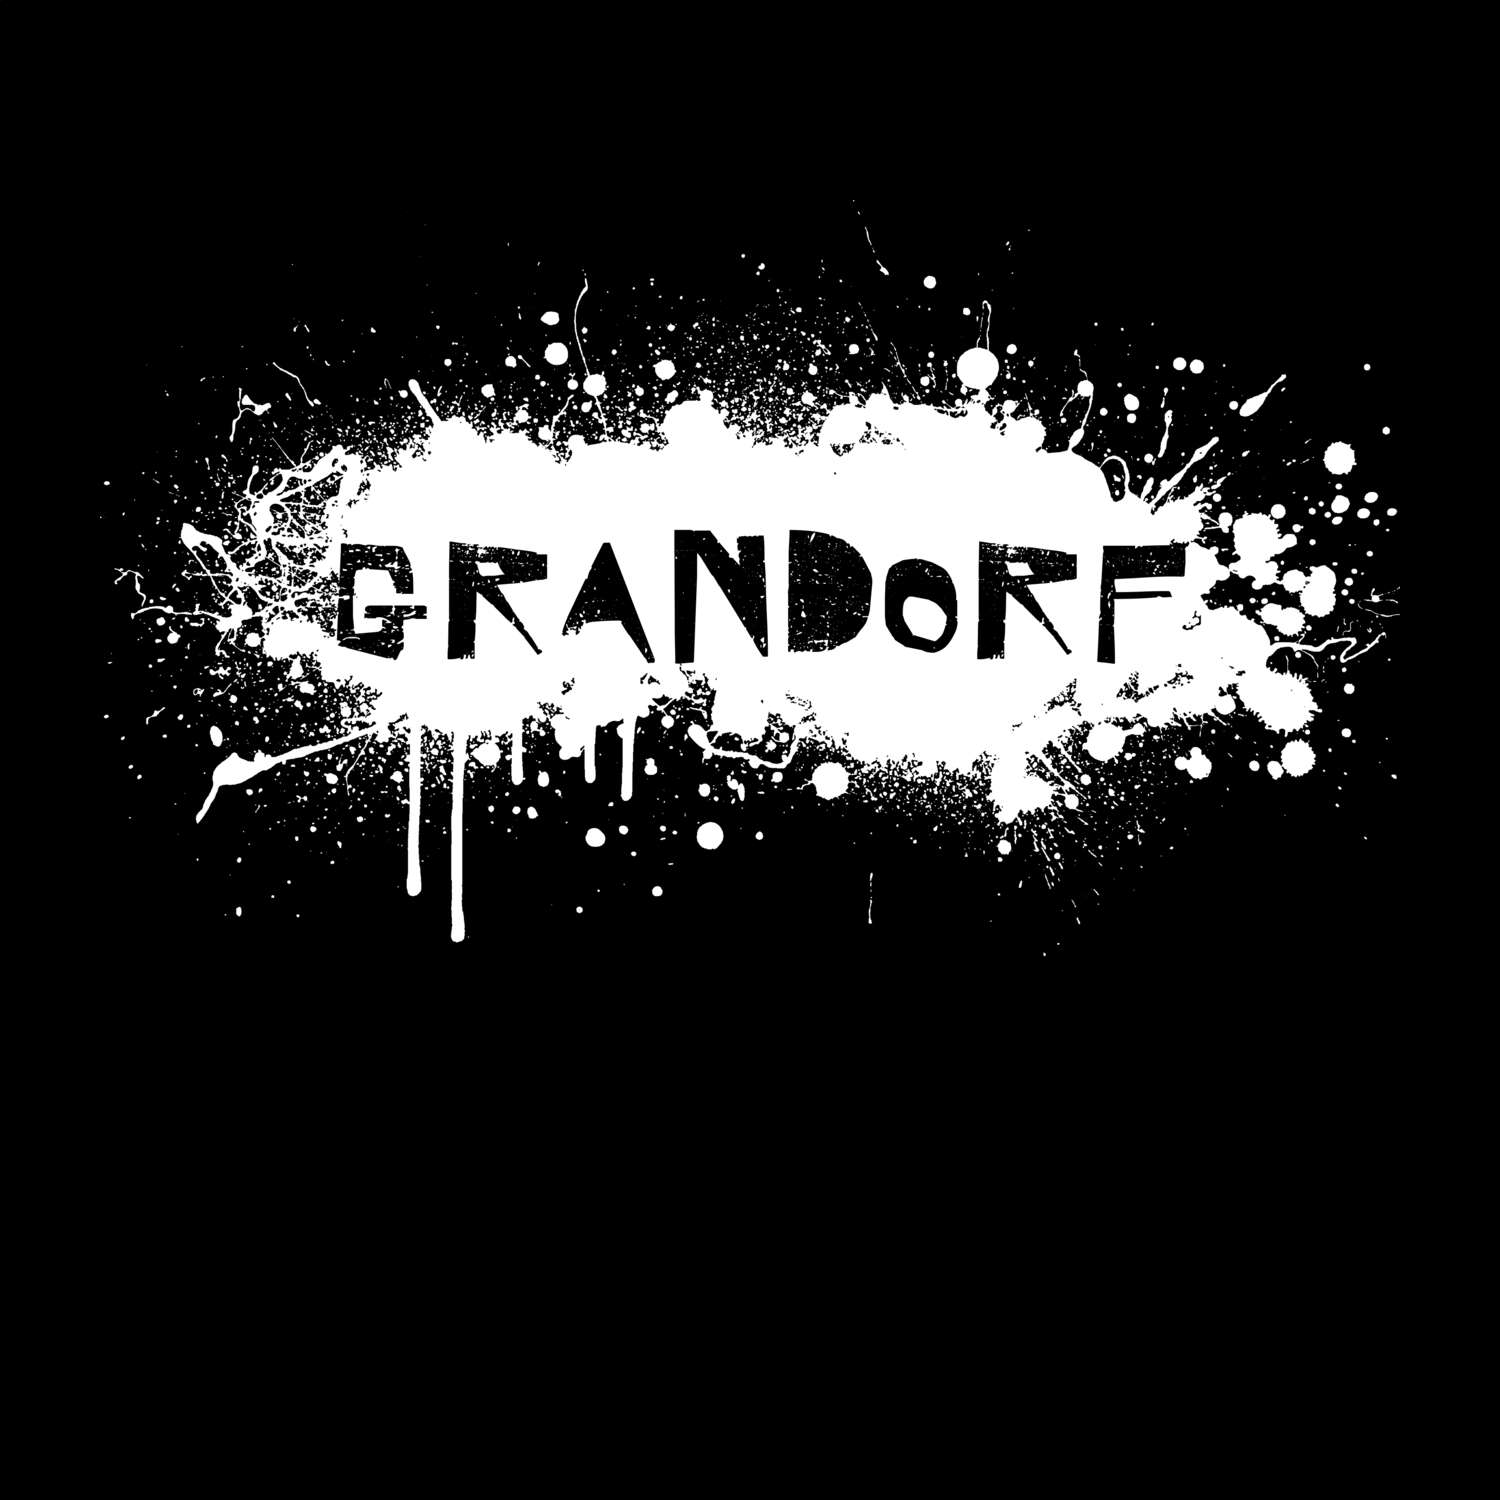 Grandorf T-Shirt »Paint Splash Punk«